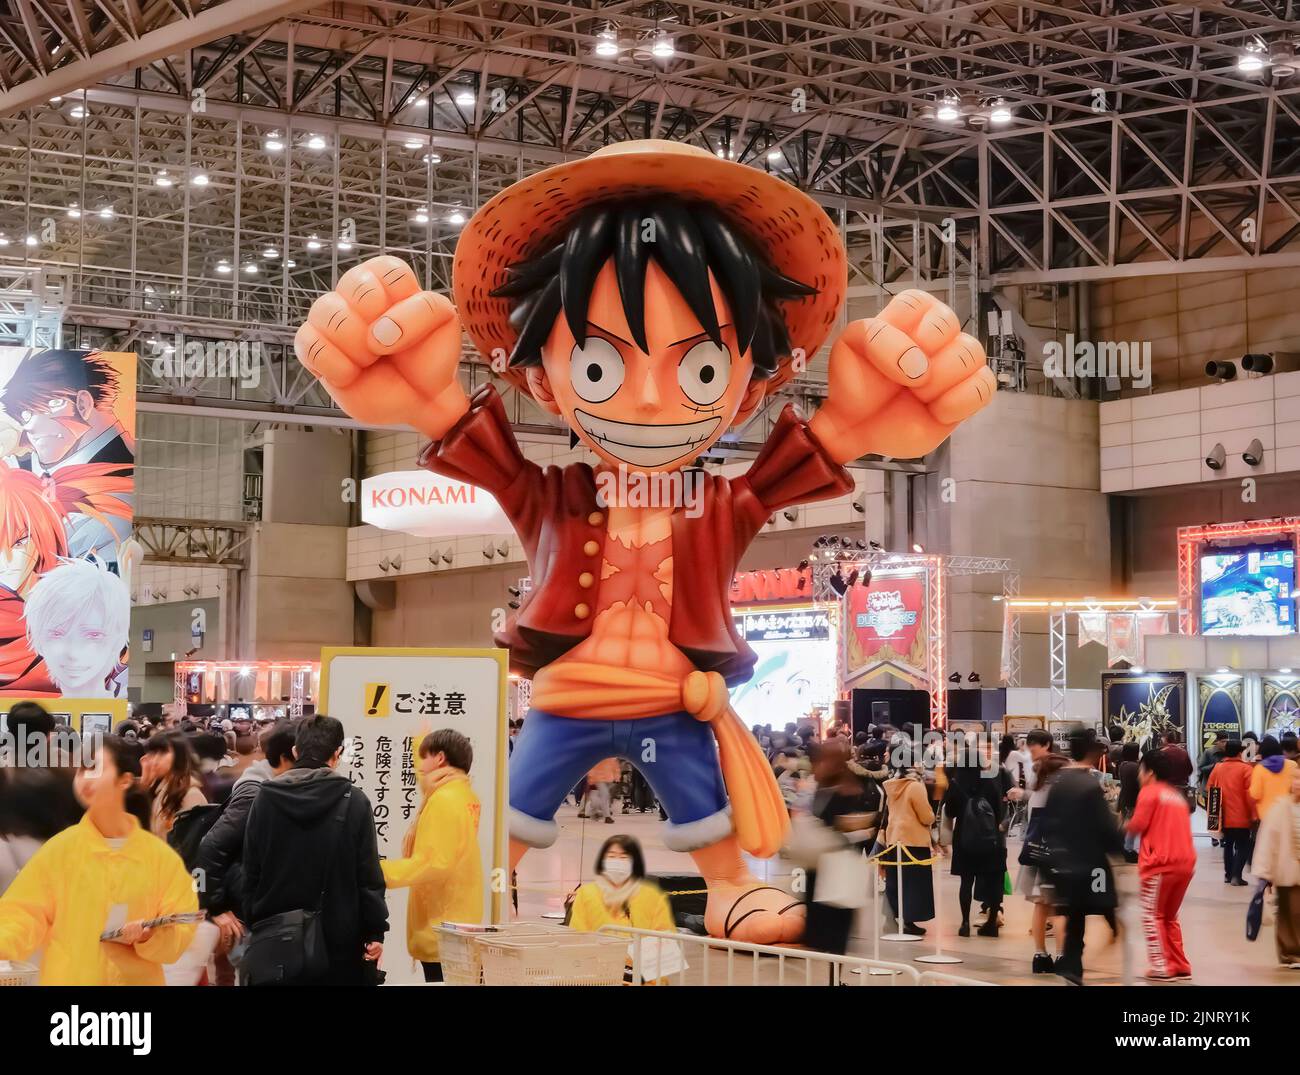 chiba, japon - décembre 22 2018 : énorme structure gonflable représentant le personnage Monkey D. Luffy portant son chapeau de paille de l'anime et manga seri Banque D'Images